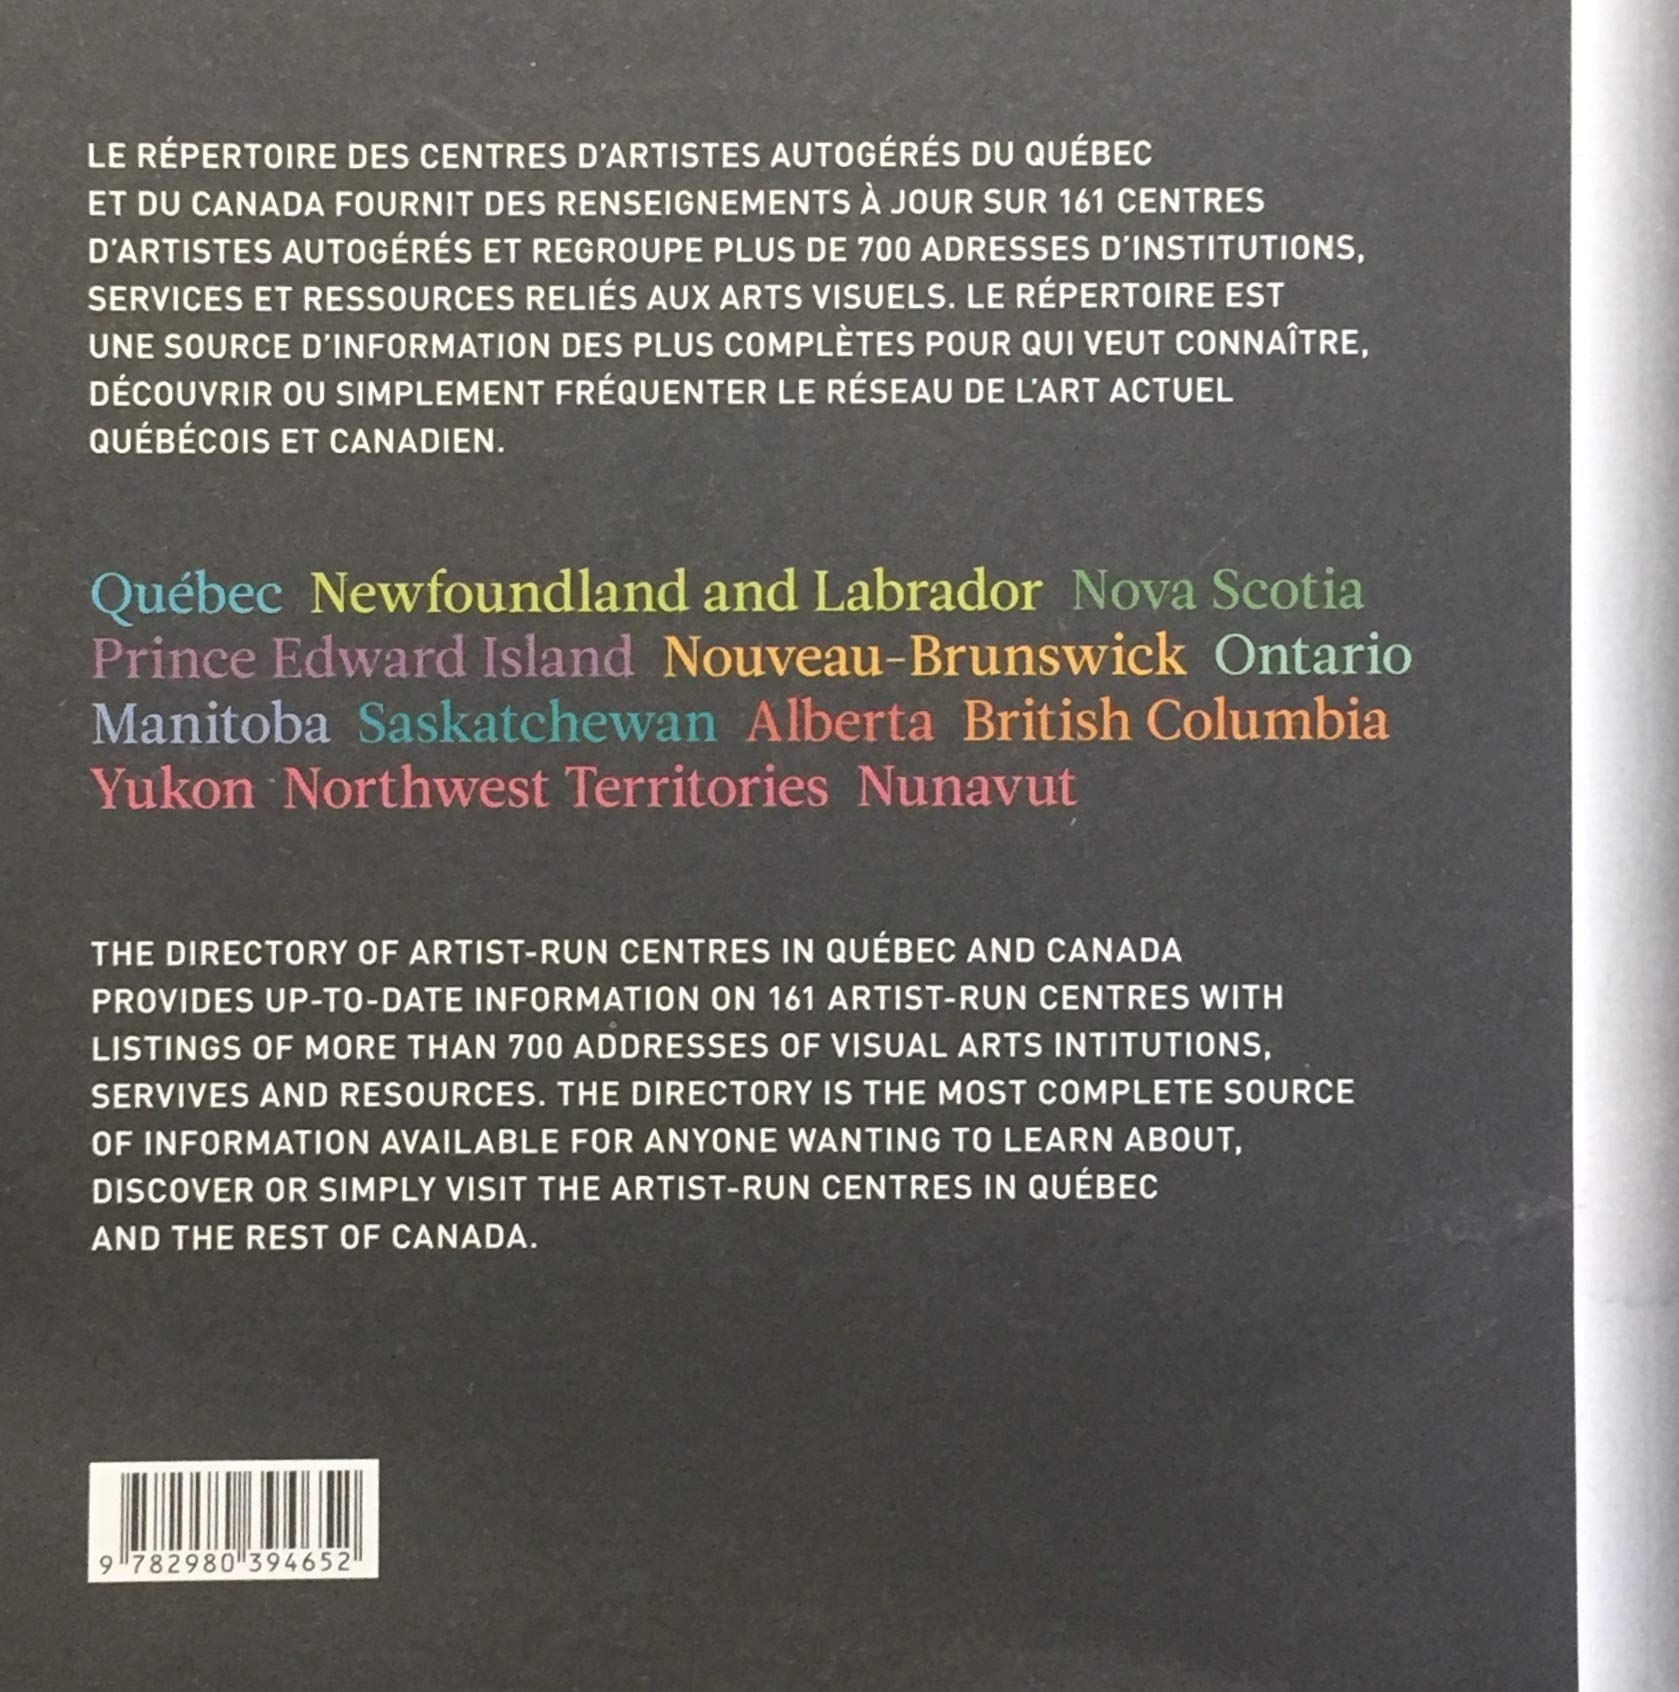 Répertoire des centres d'artistes autogérés du Québec et Canada (RCAAQ)